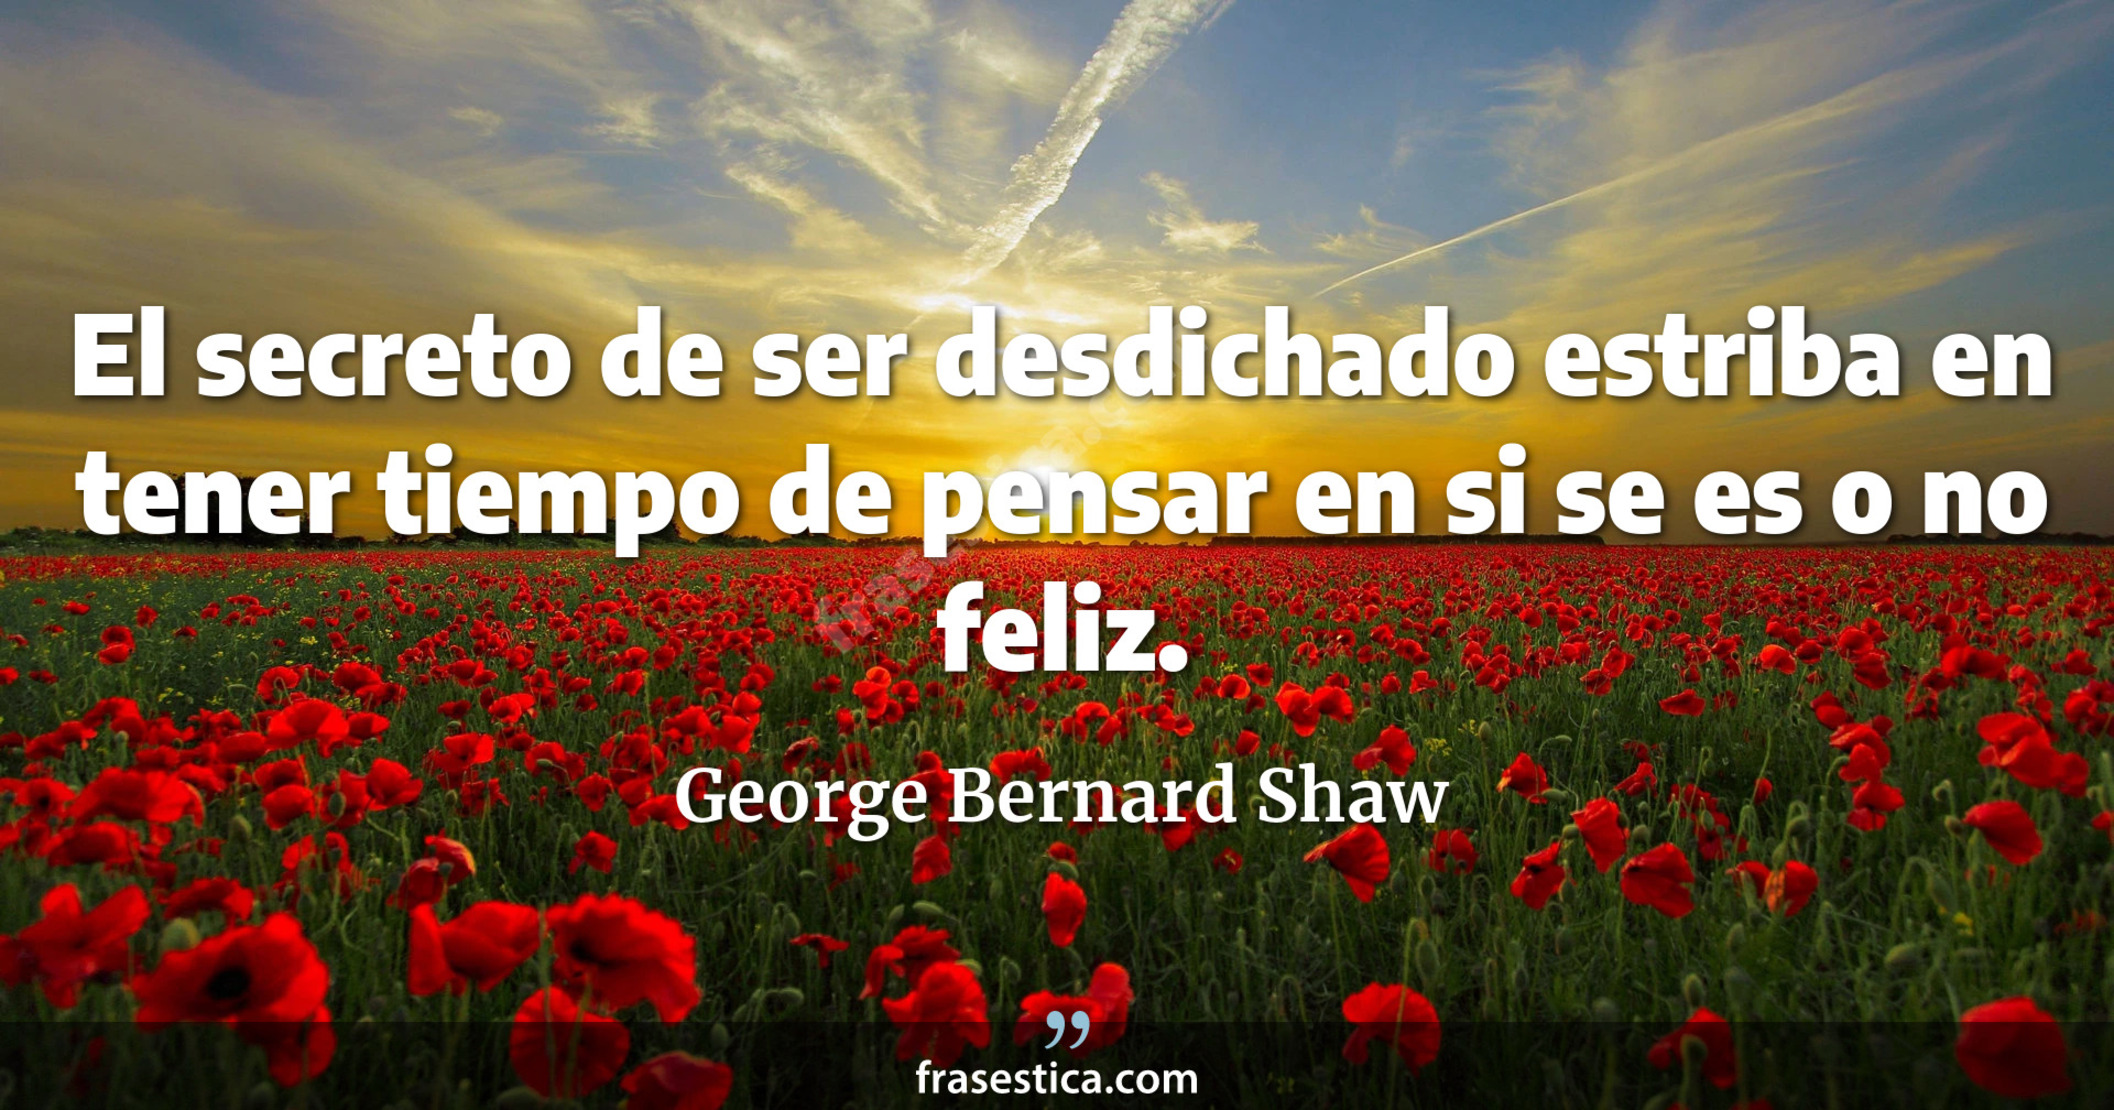 El secreto de ser desdichado estriba en tener tiempo de pensar en si se es o no feliz. - George Bernard Shaw